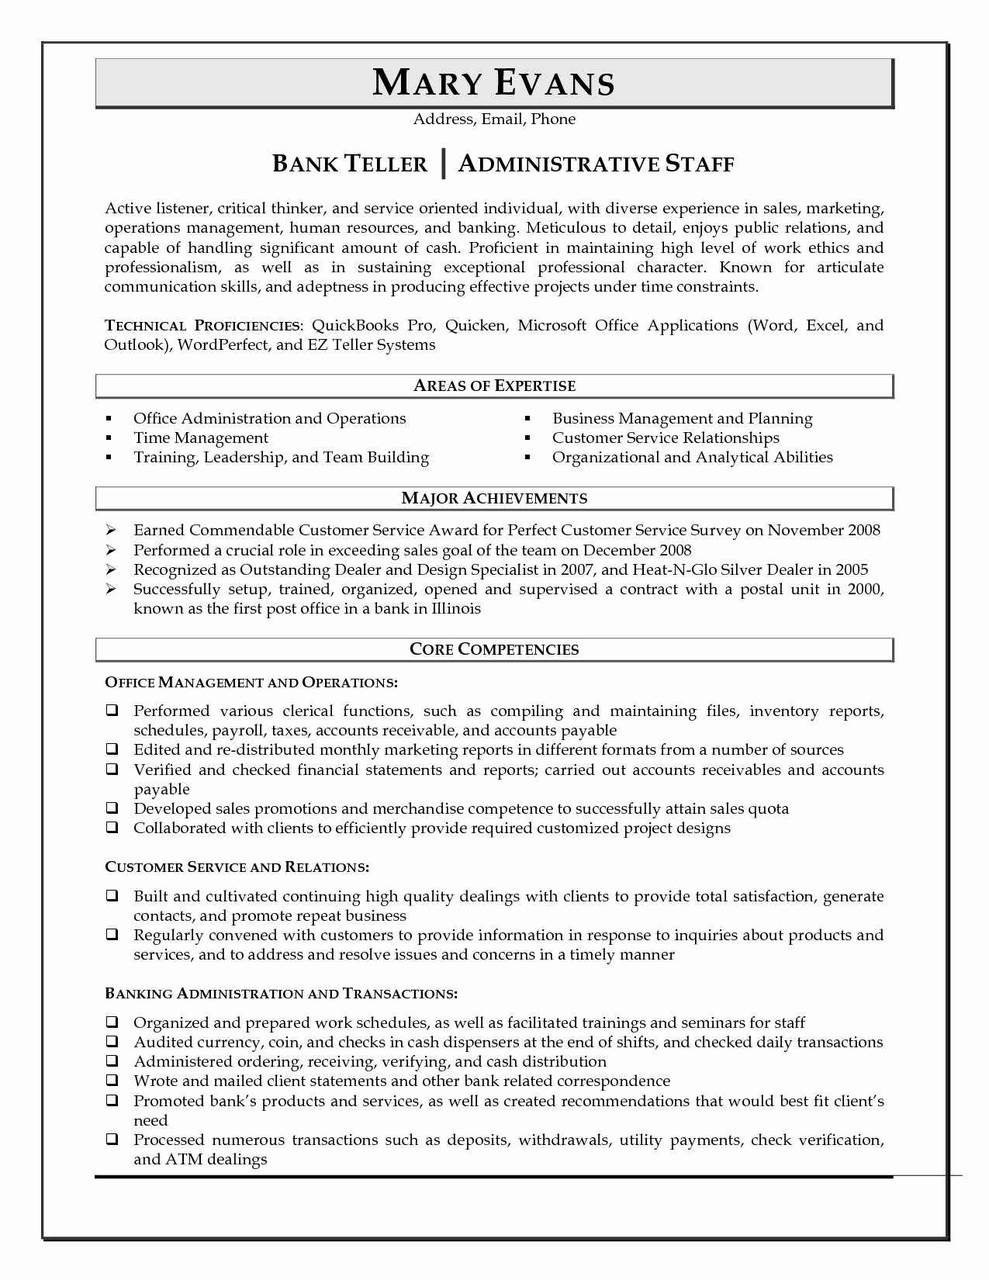 bank teller resume skills bank teller resume sample writing tips